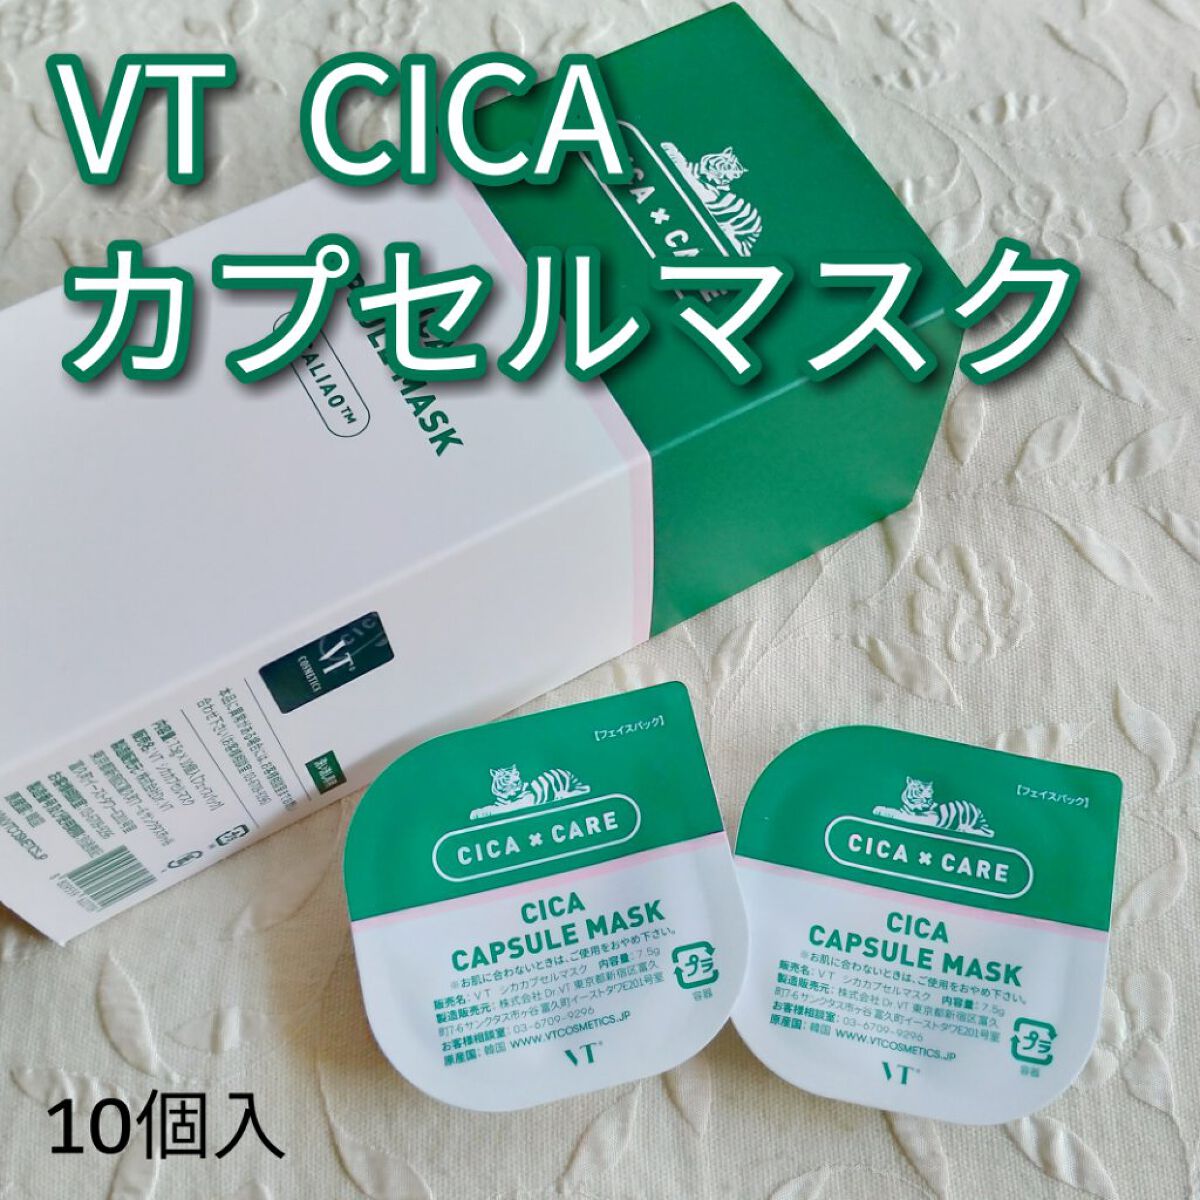 VT CICA カプセルマスク PRO CICAセット - 通販 - guianegro.com.br